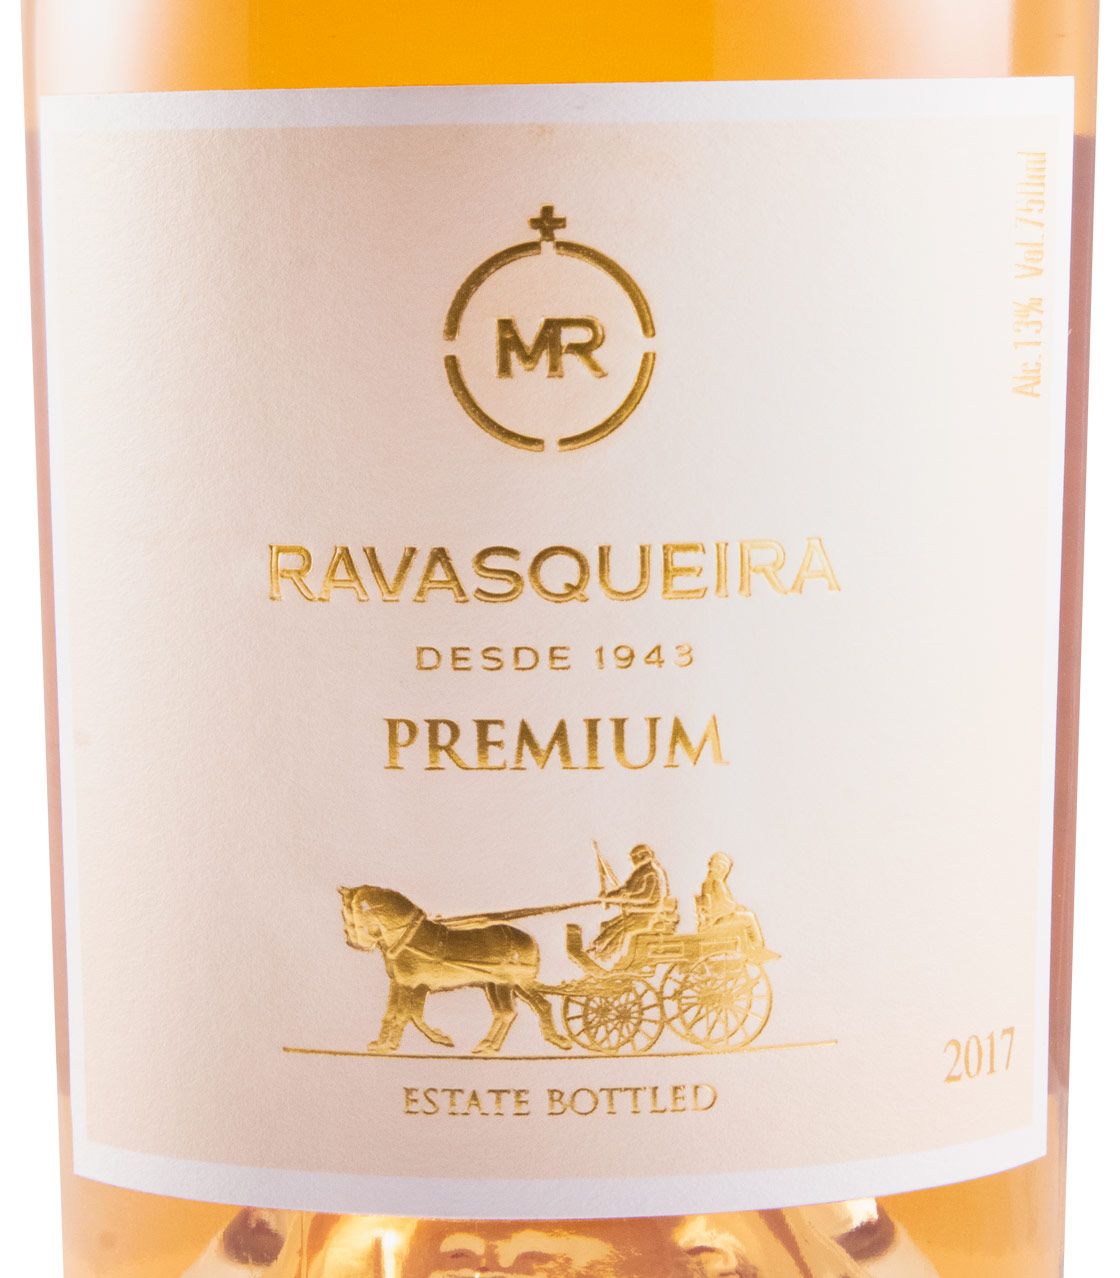 2017 Monte da Ravasqueira MR Premium rose